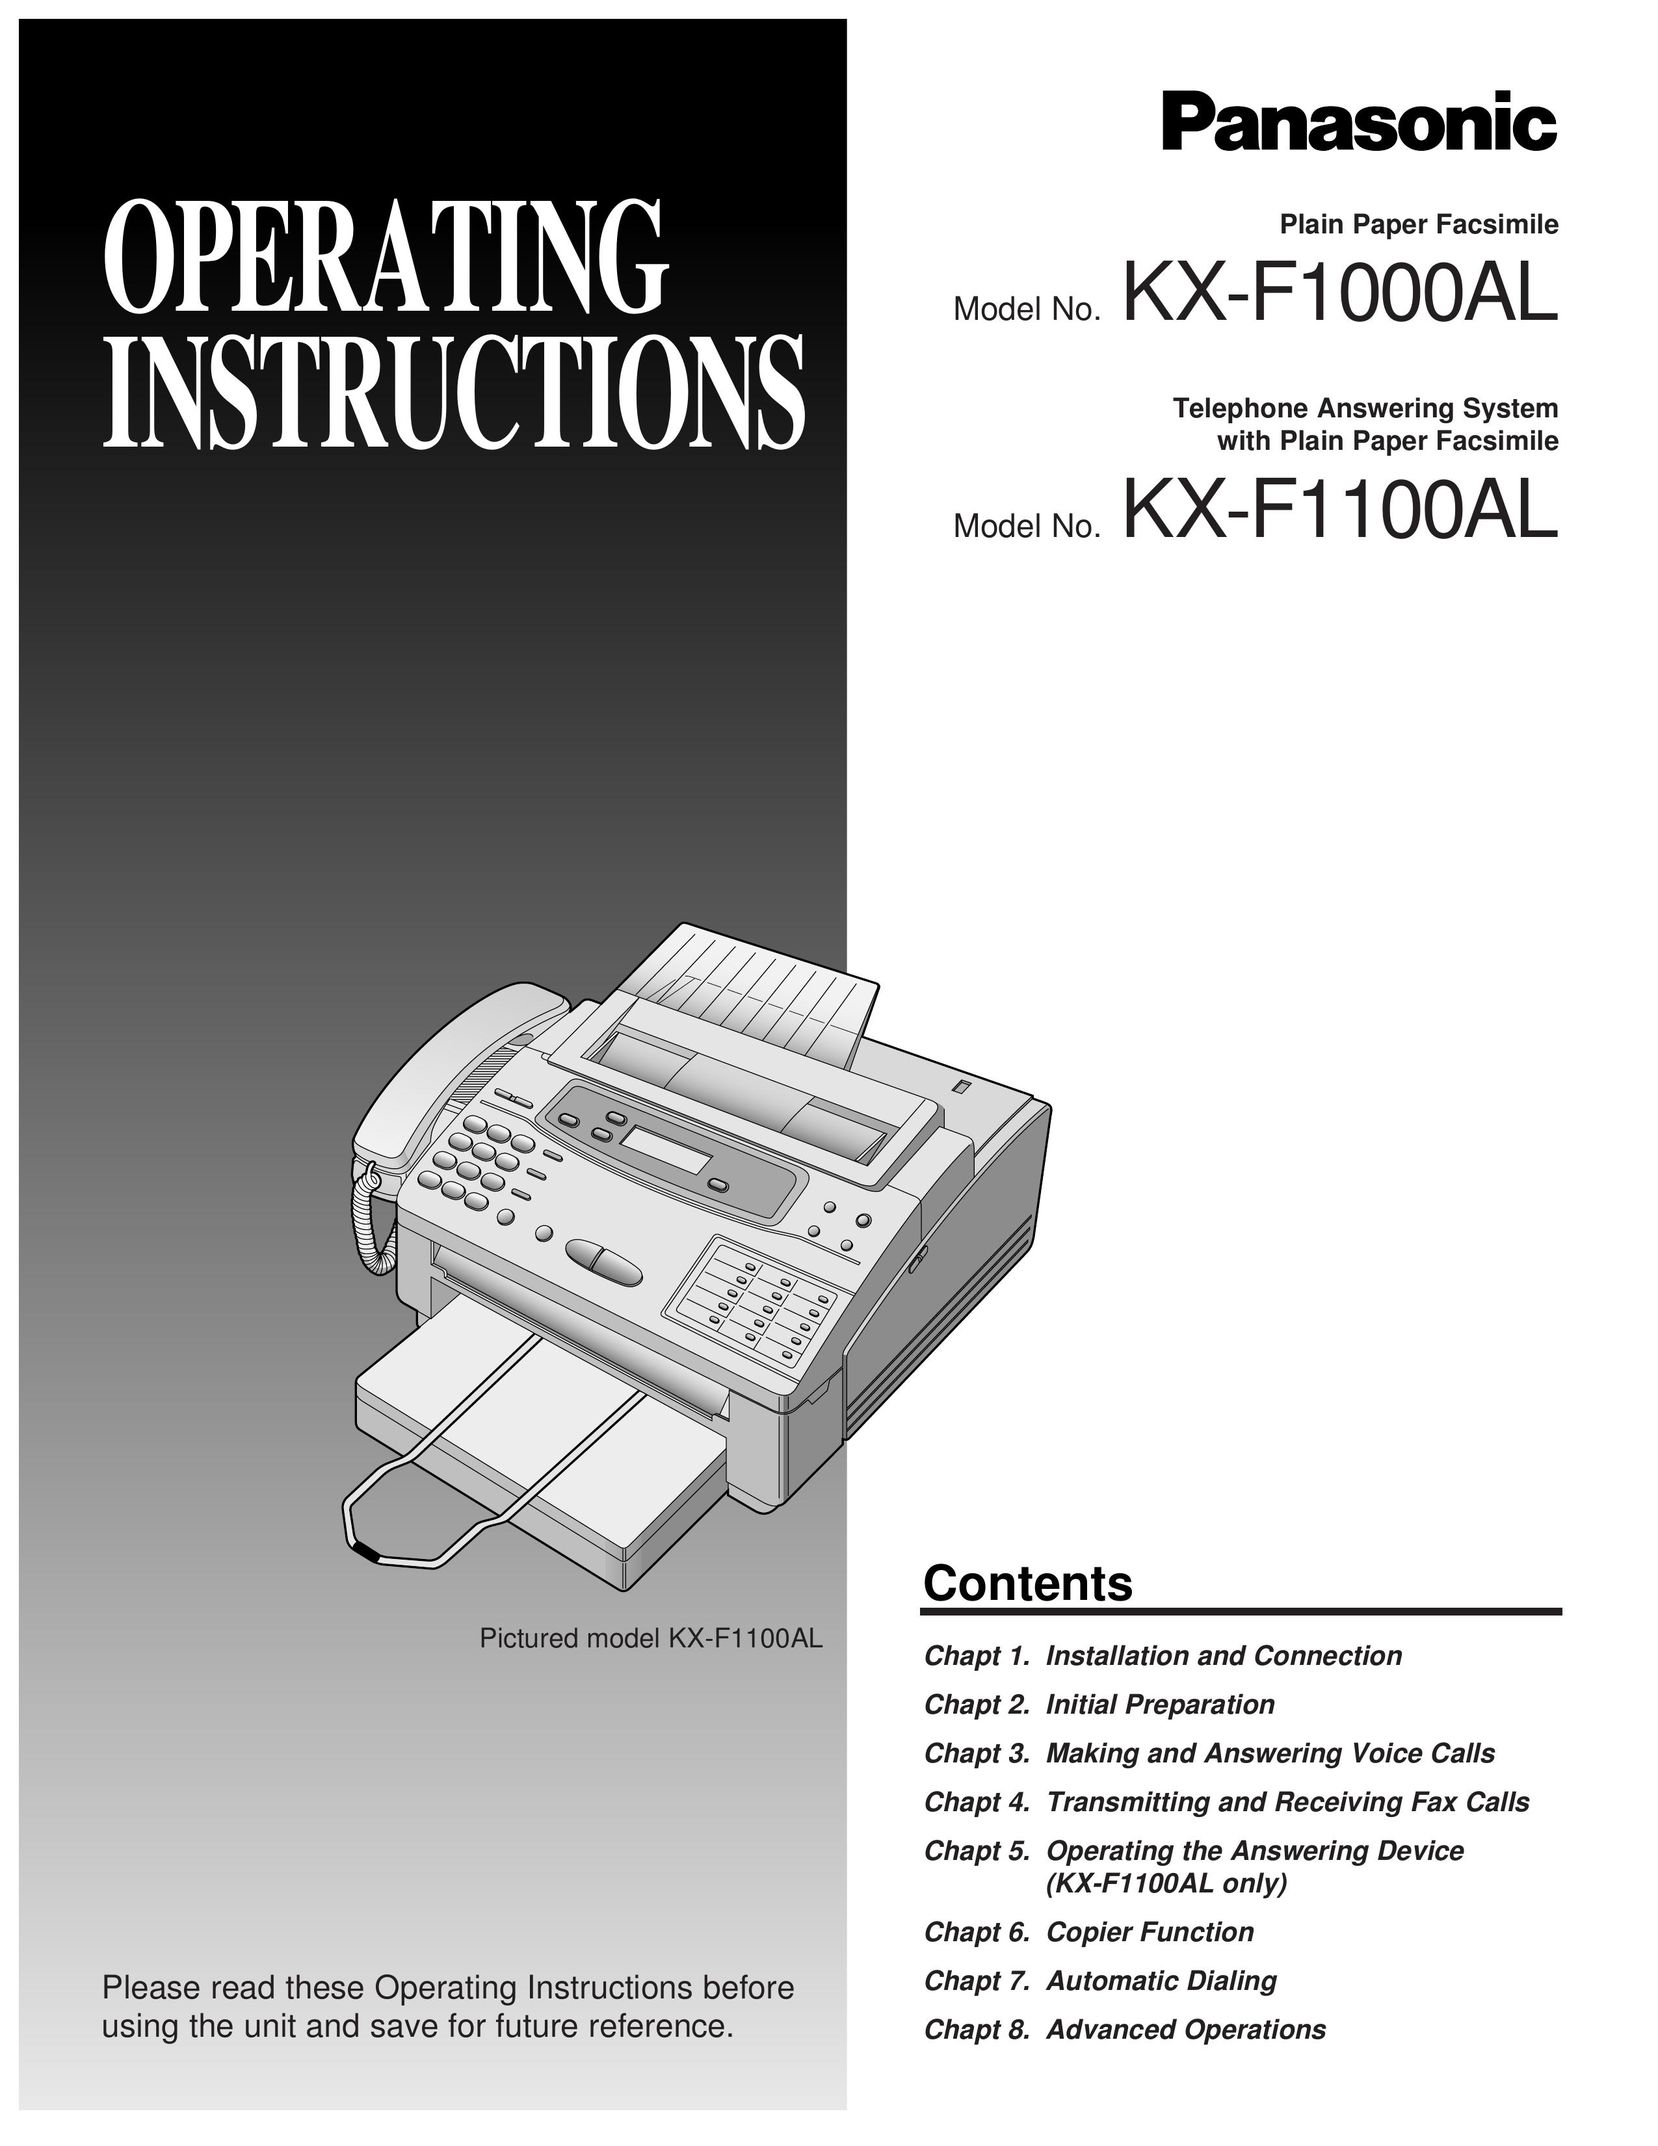 Panasonic KX-F1000AL Fax Machine User Manual